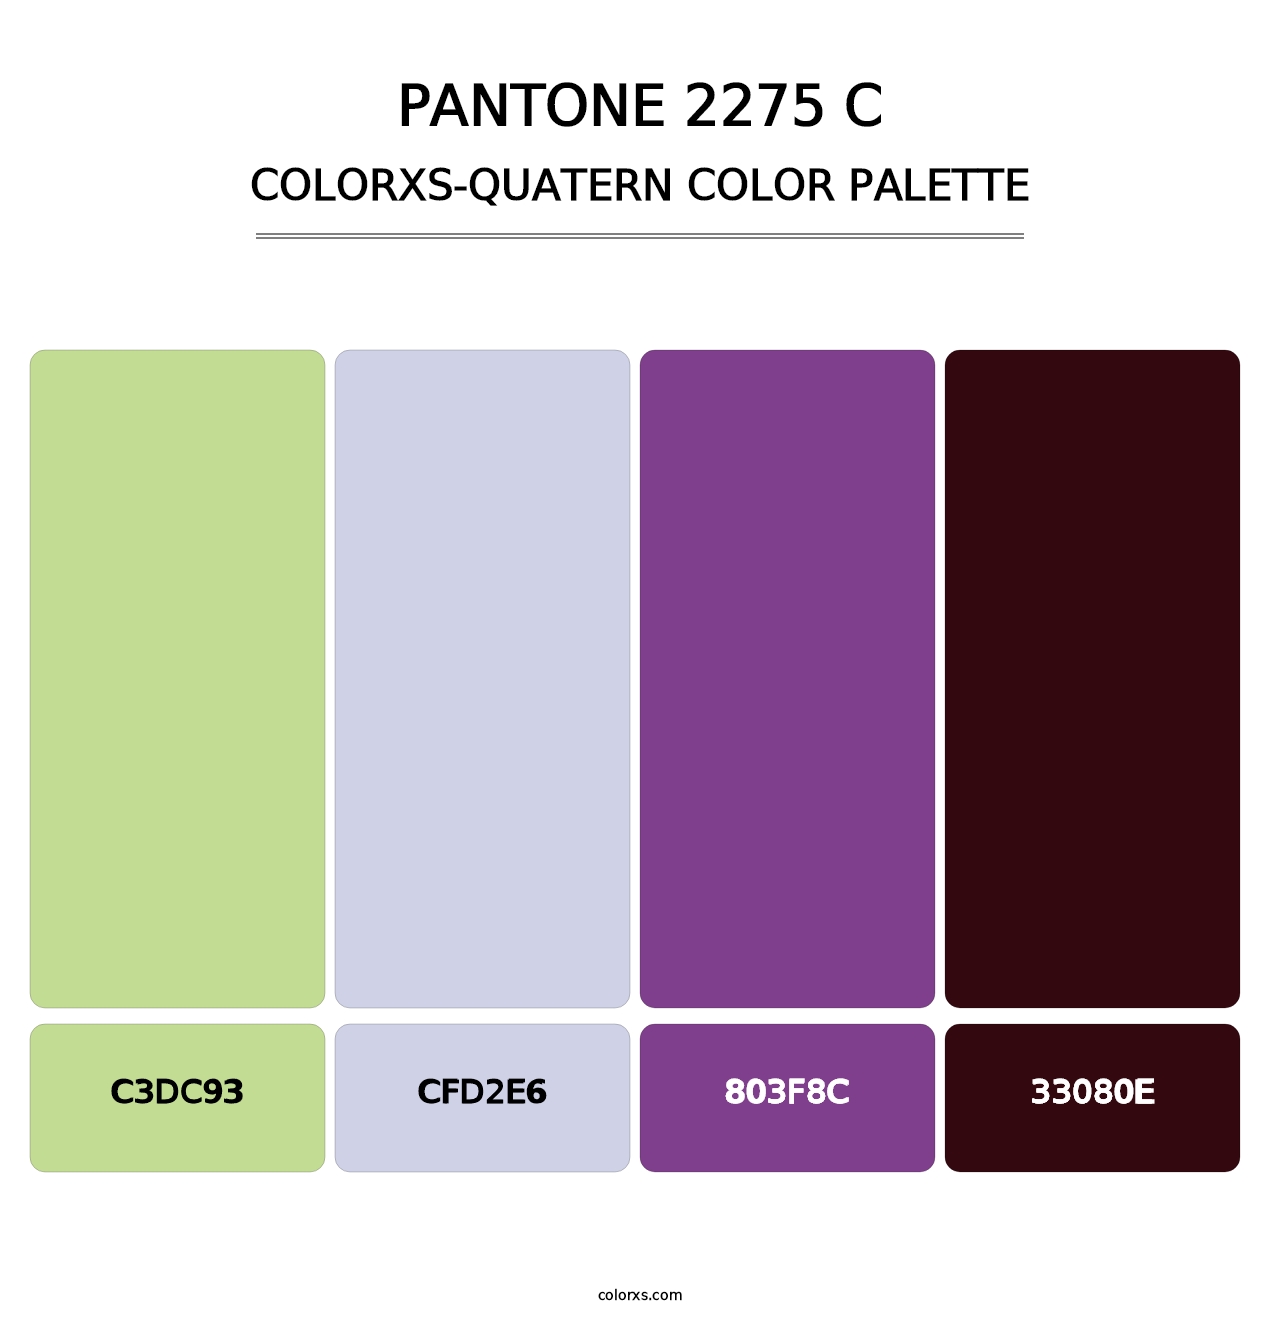 PANTONE 2275 C - Colorxs Quatern Palette